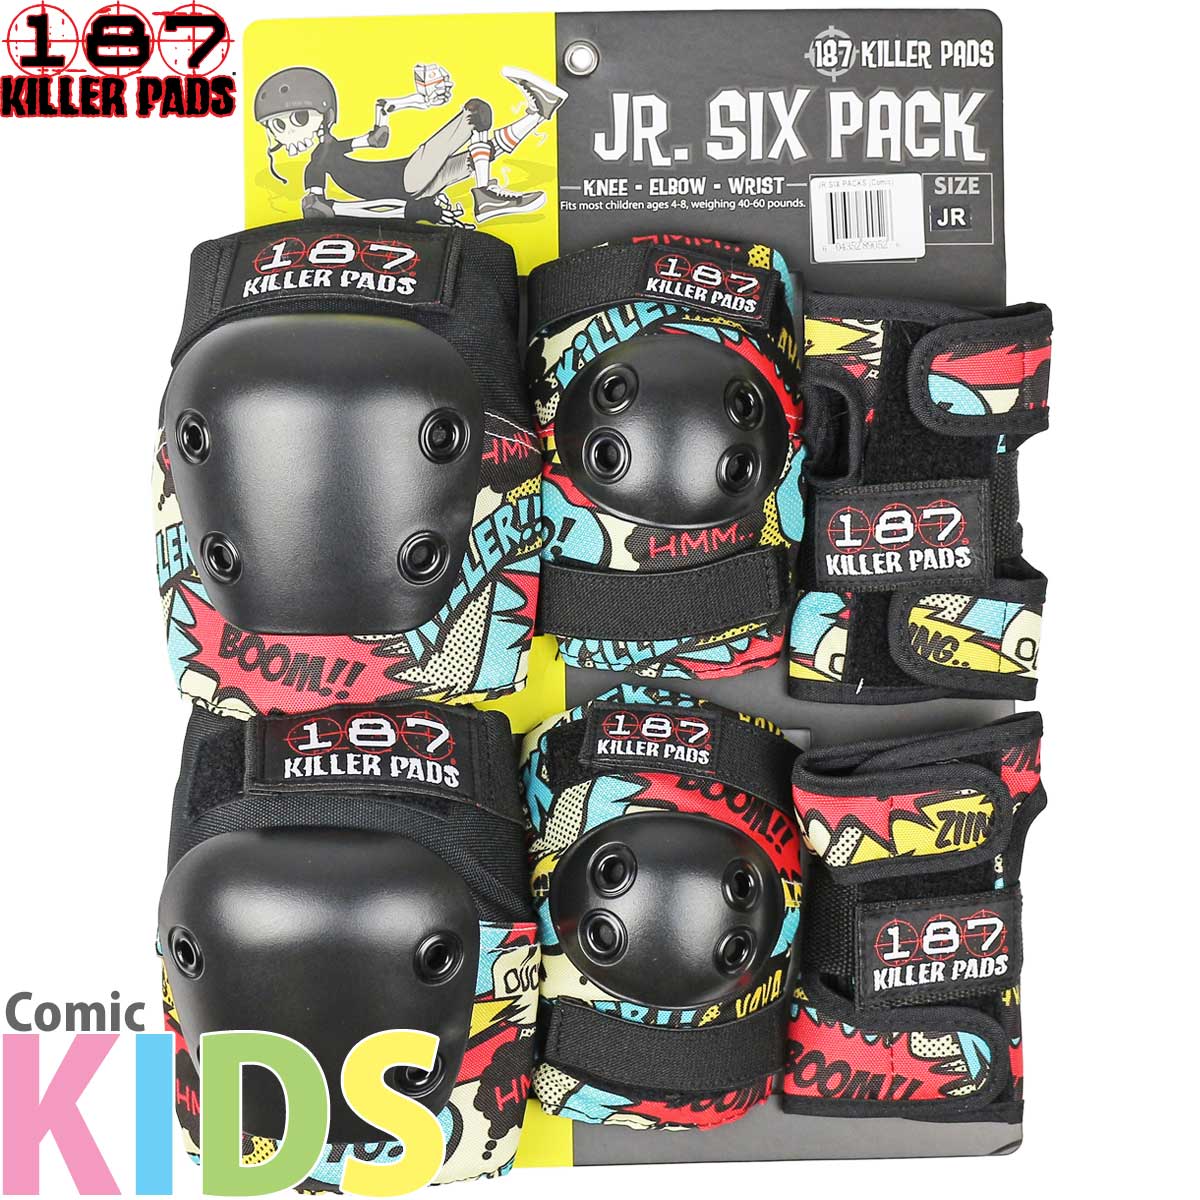 187 スケボー キッズプロテクター コミック 子供 3点セット Killerpads Junior Six Pack Pad Set Comic  ヒジ ヒザ 手首 キラーパッド スケートボード パーク ランプ ユース ランプ 小学生 低学年 幼児 男の子 女の子 こども 子ども cutback